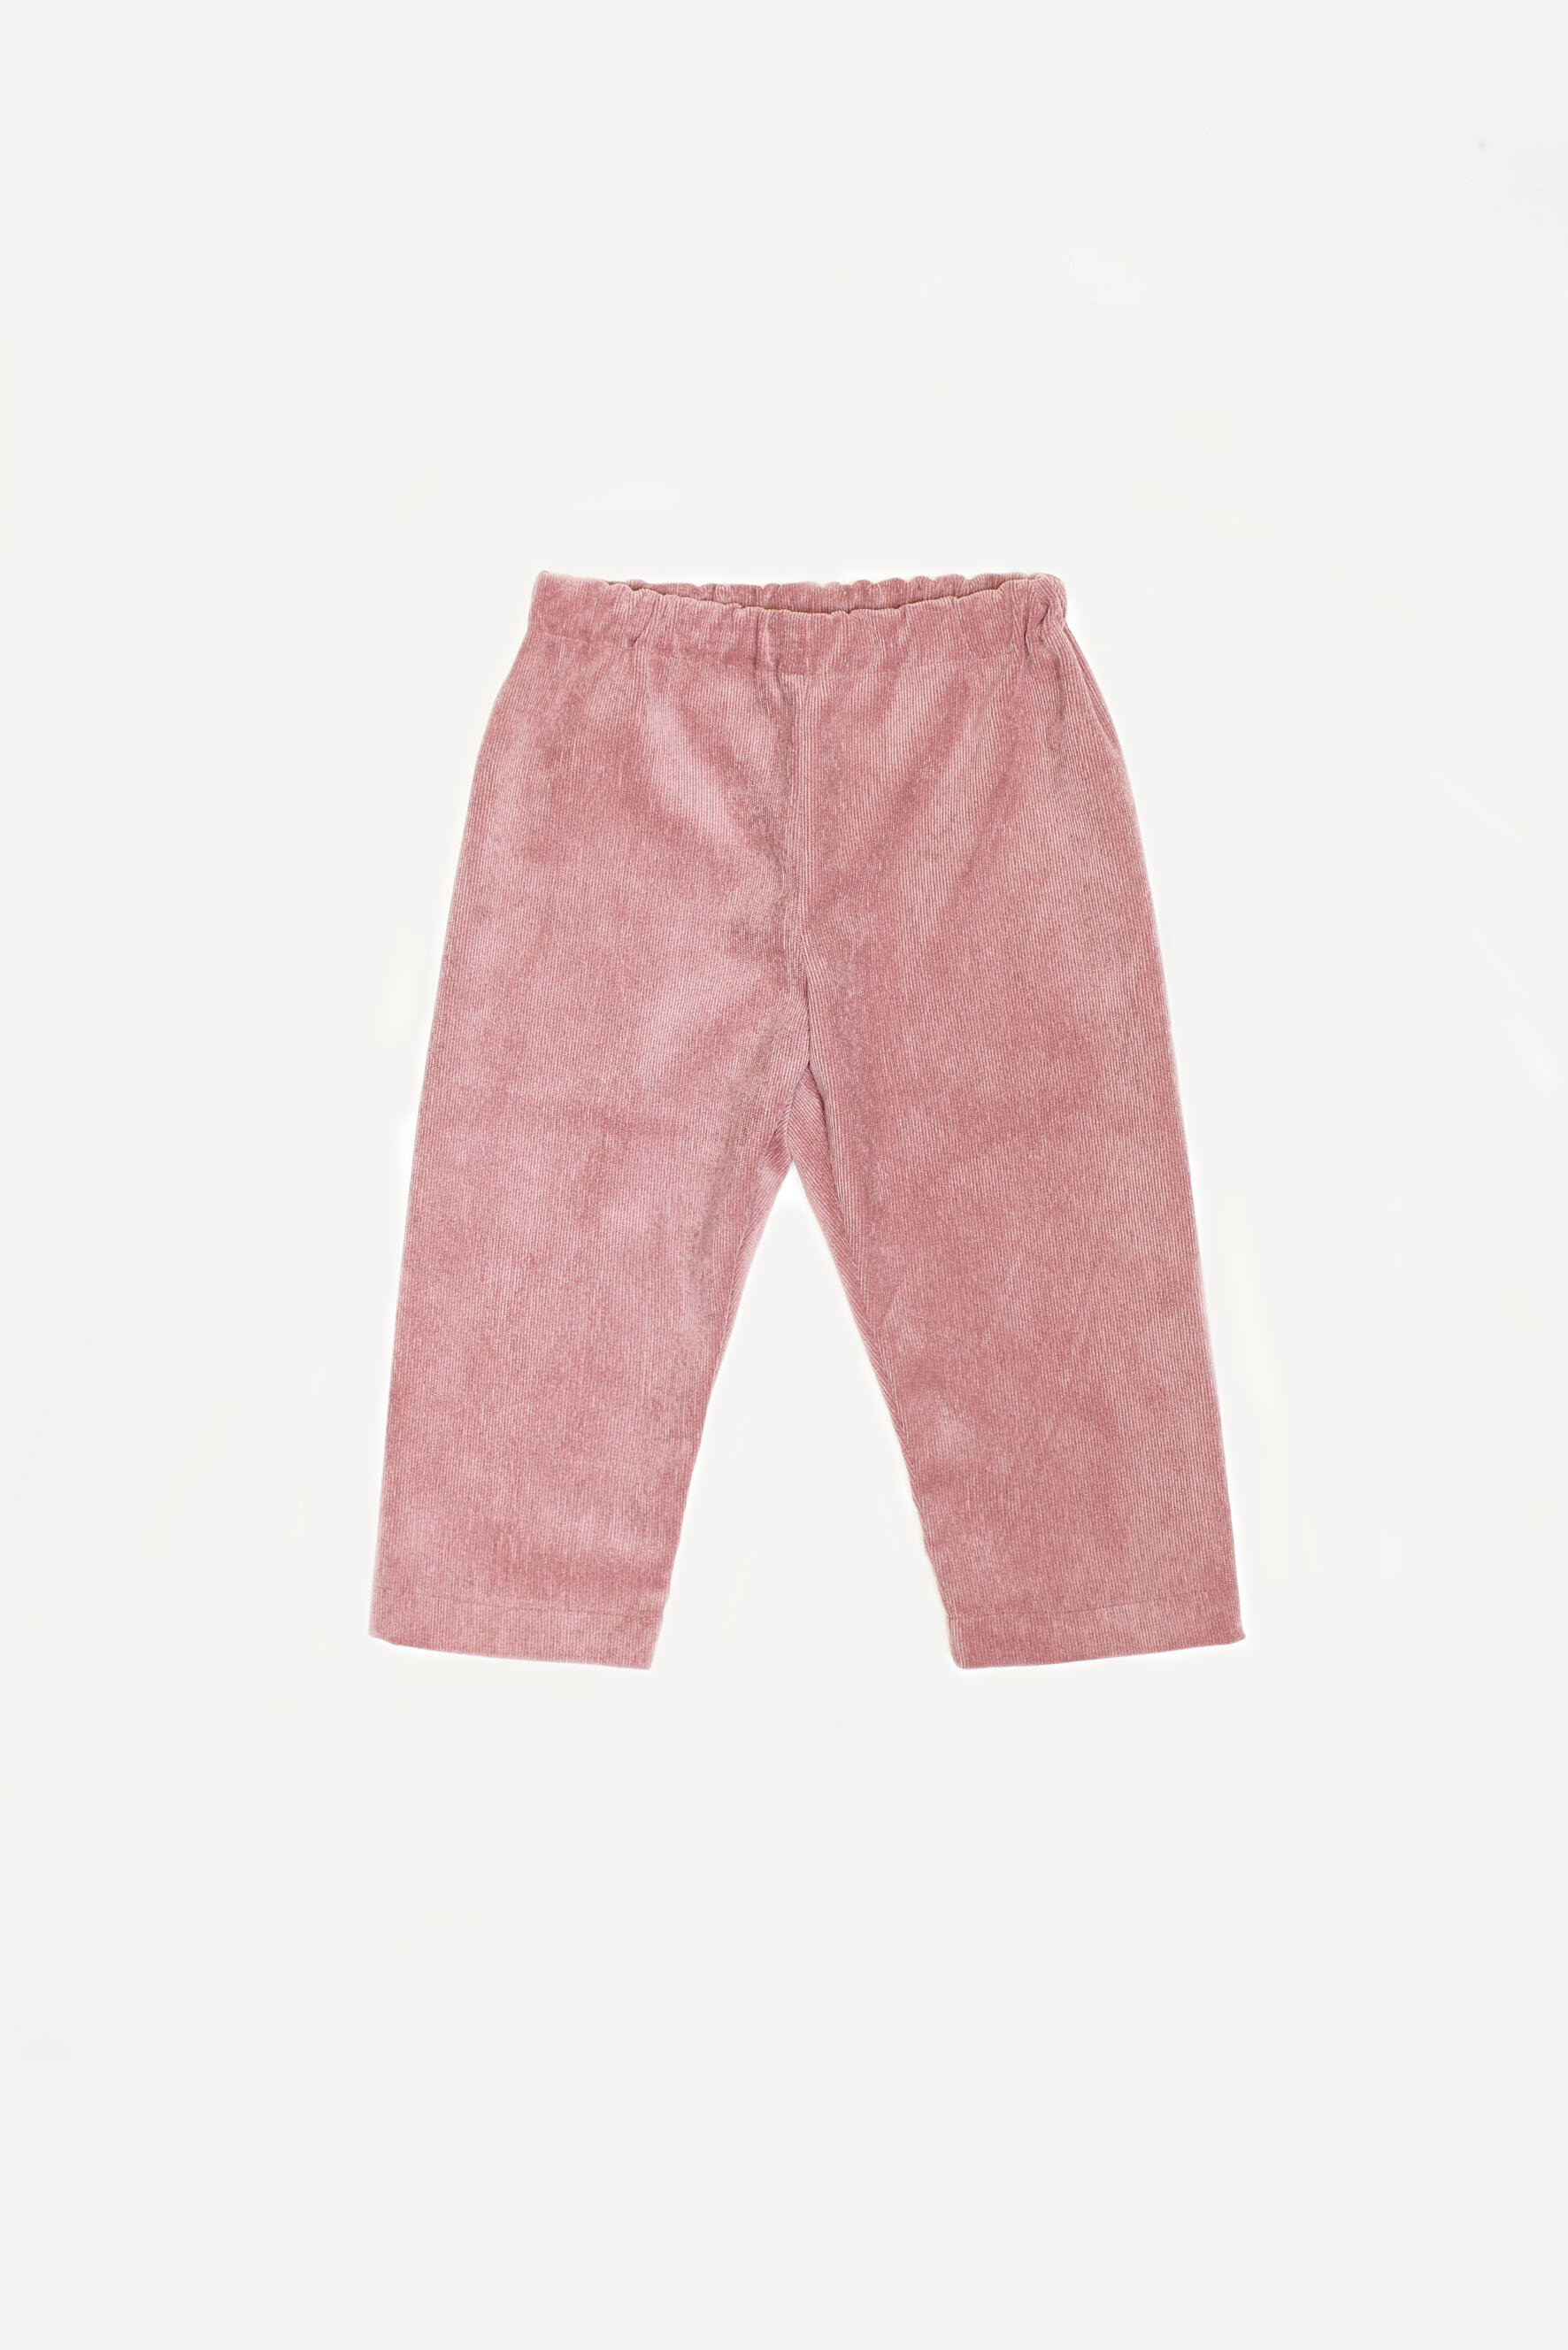 Pantaloni bambina in velluto rosa antico